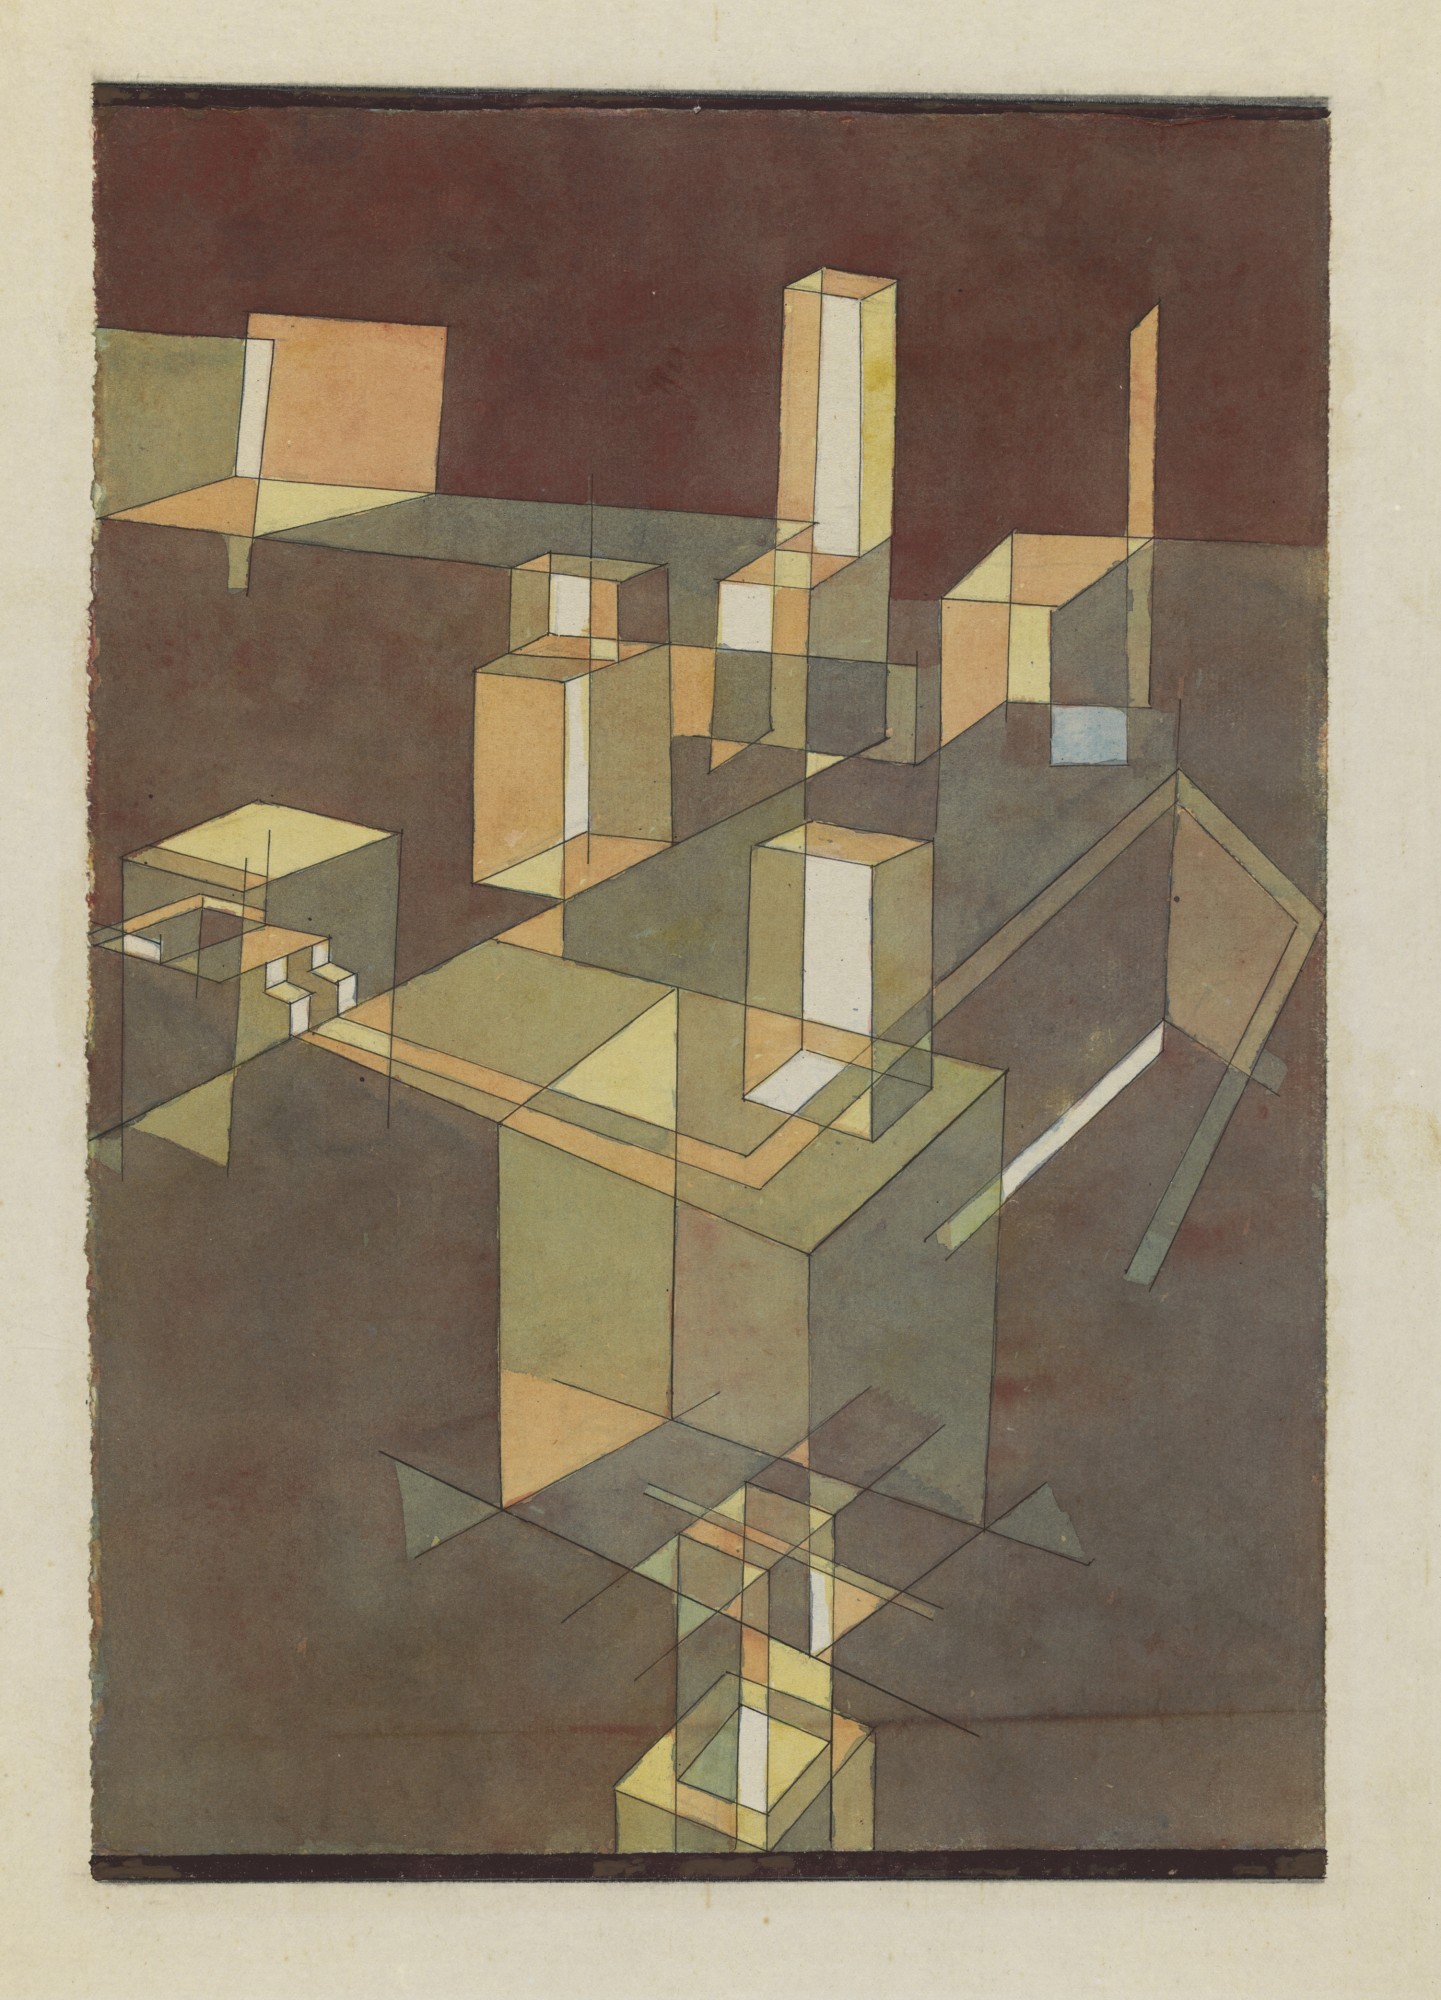 Paul Klee, "italienische Stadt", 1928, 66